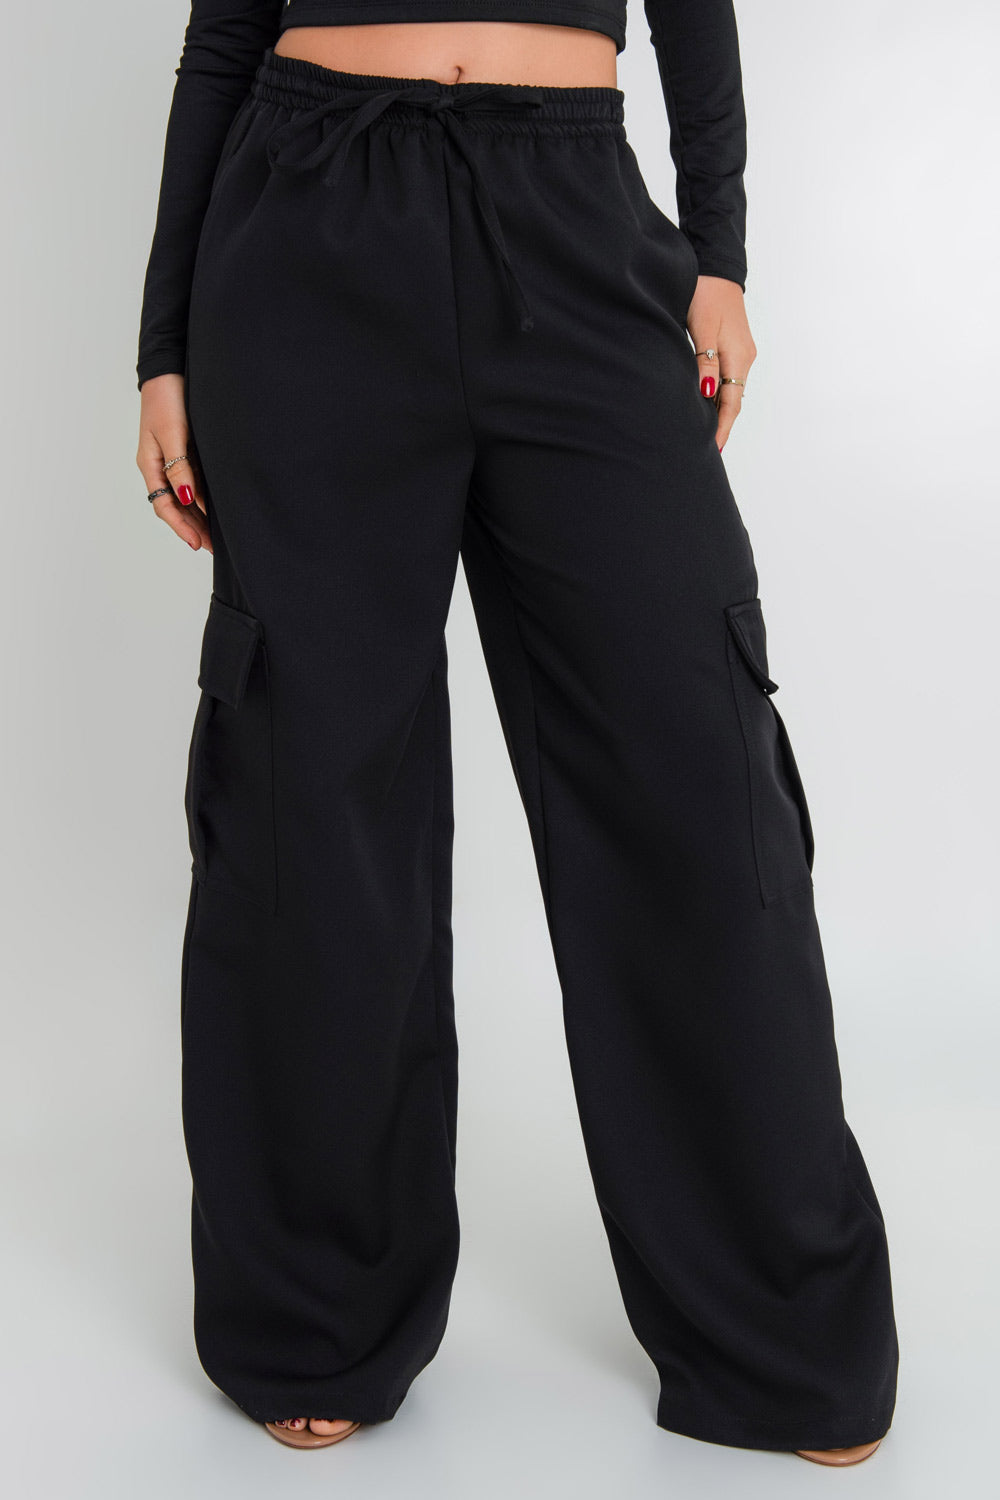 Pantalón cargo de fit wide leg, cintura alta con pretina elástica, jareta frontal ajustable, bolsillos delanteros y laterales cargo con cartera.